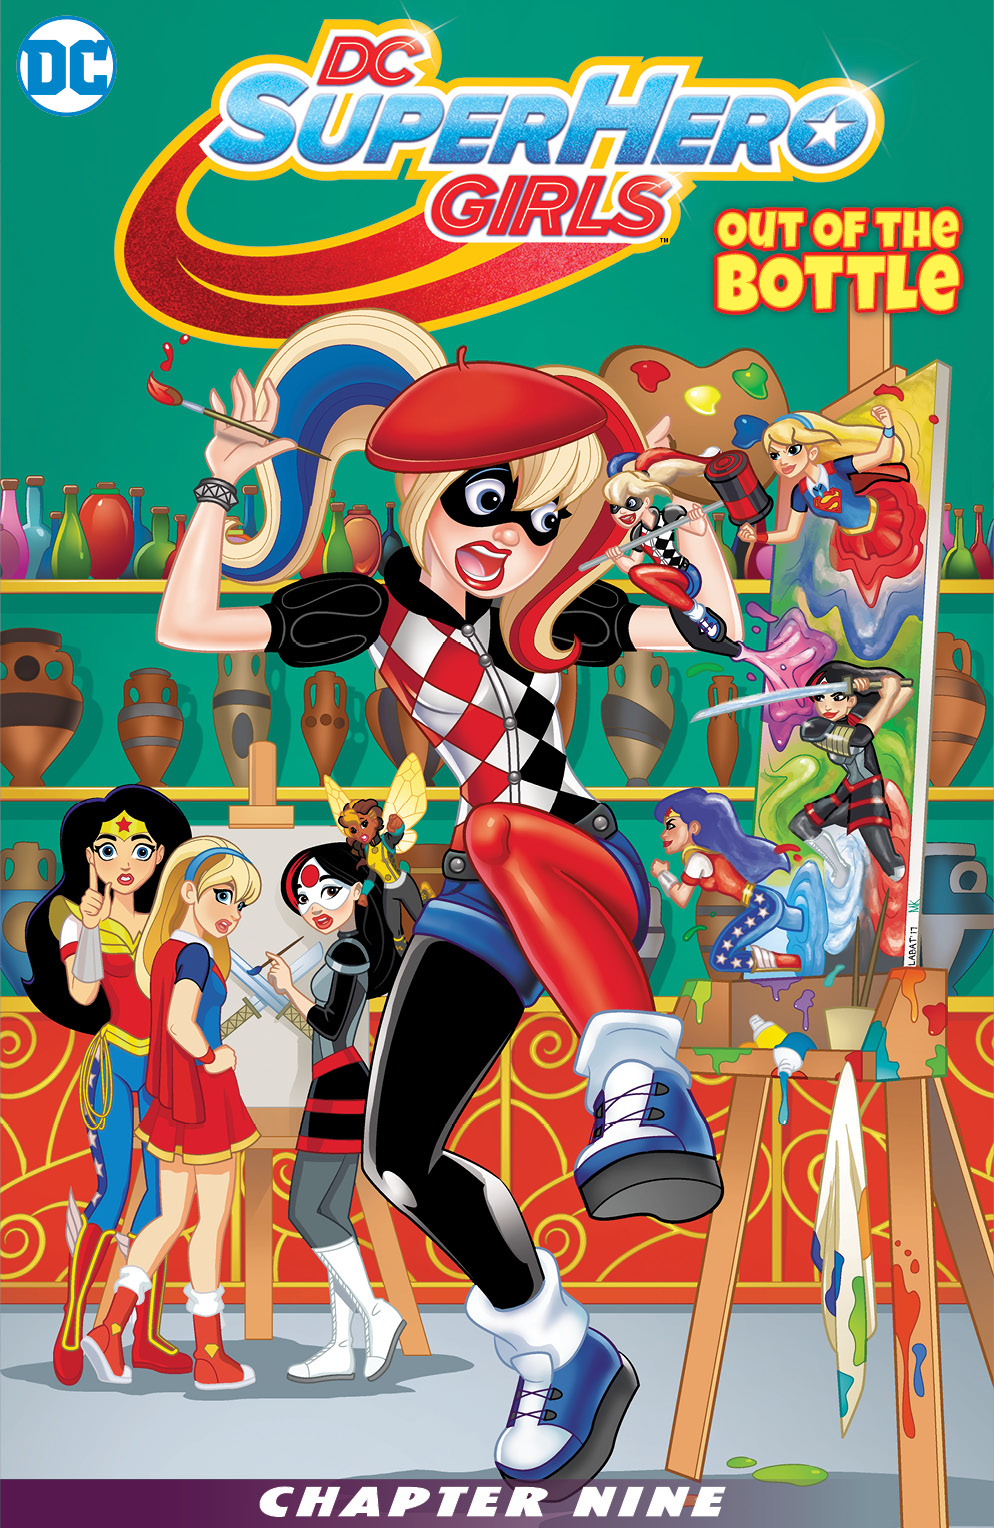 All Superhero Girls Porn - Dc Super Hero Girls 009 Out Of The Bottle 2017 | Read Dc Super Hero Girls  009 Out Of The Bottle 2017 comic online in high quality. Read Full Comic  online for